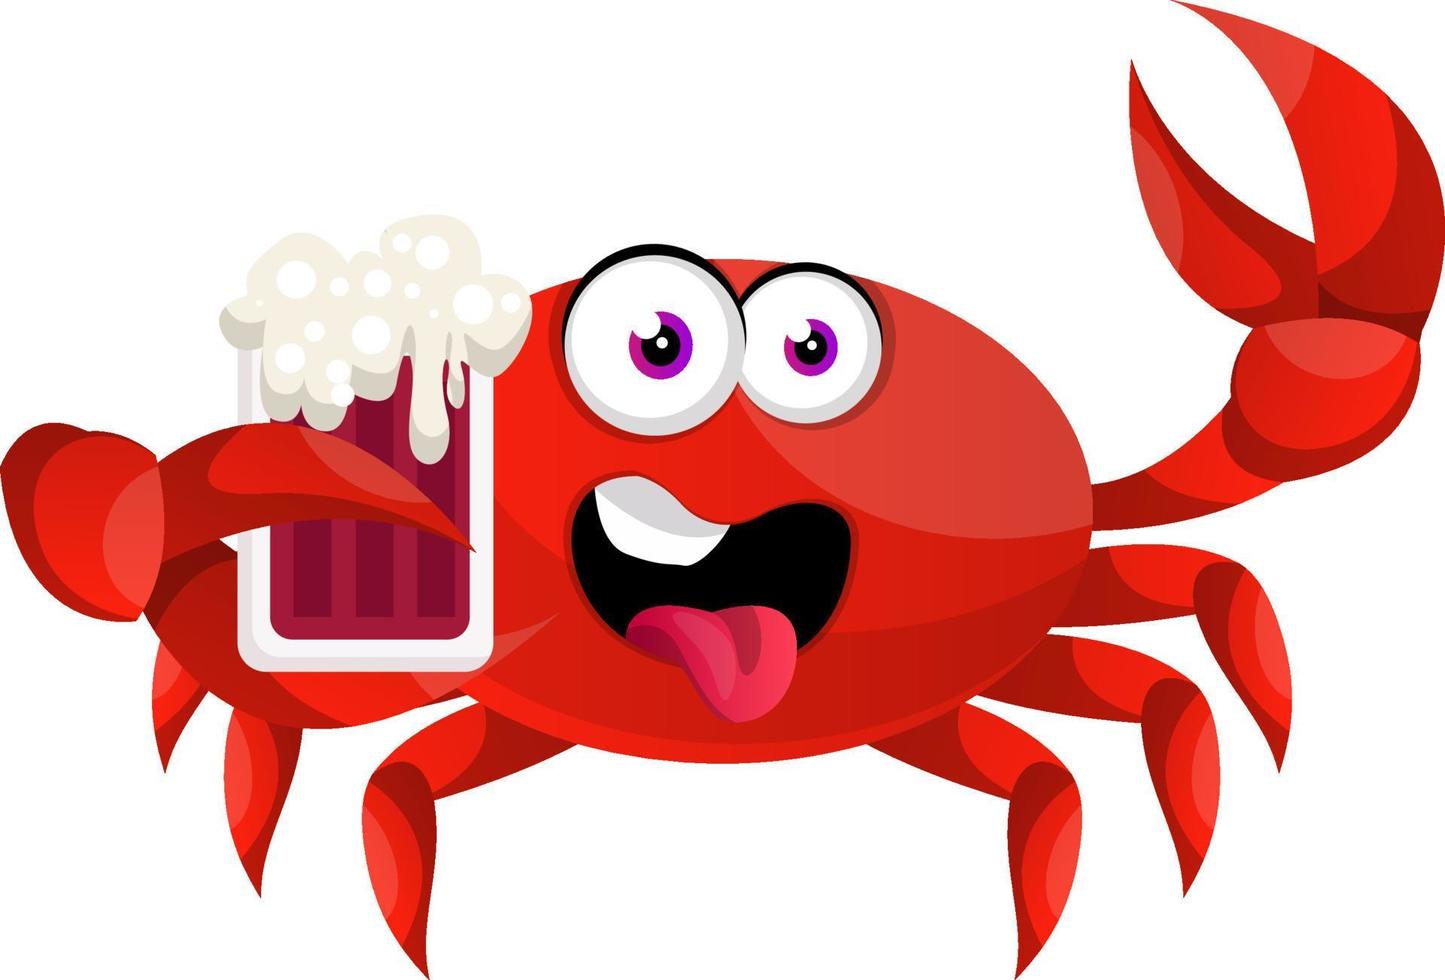 crabe avec de la bière, illustration, vecteur sur fond blanc.